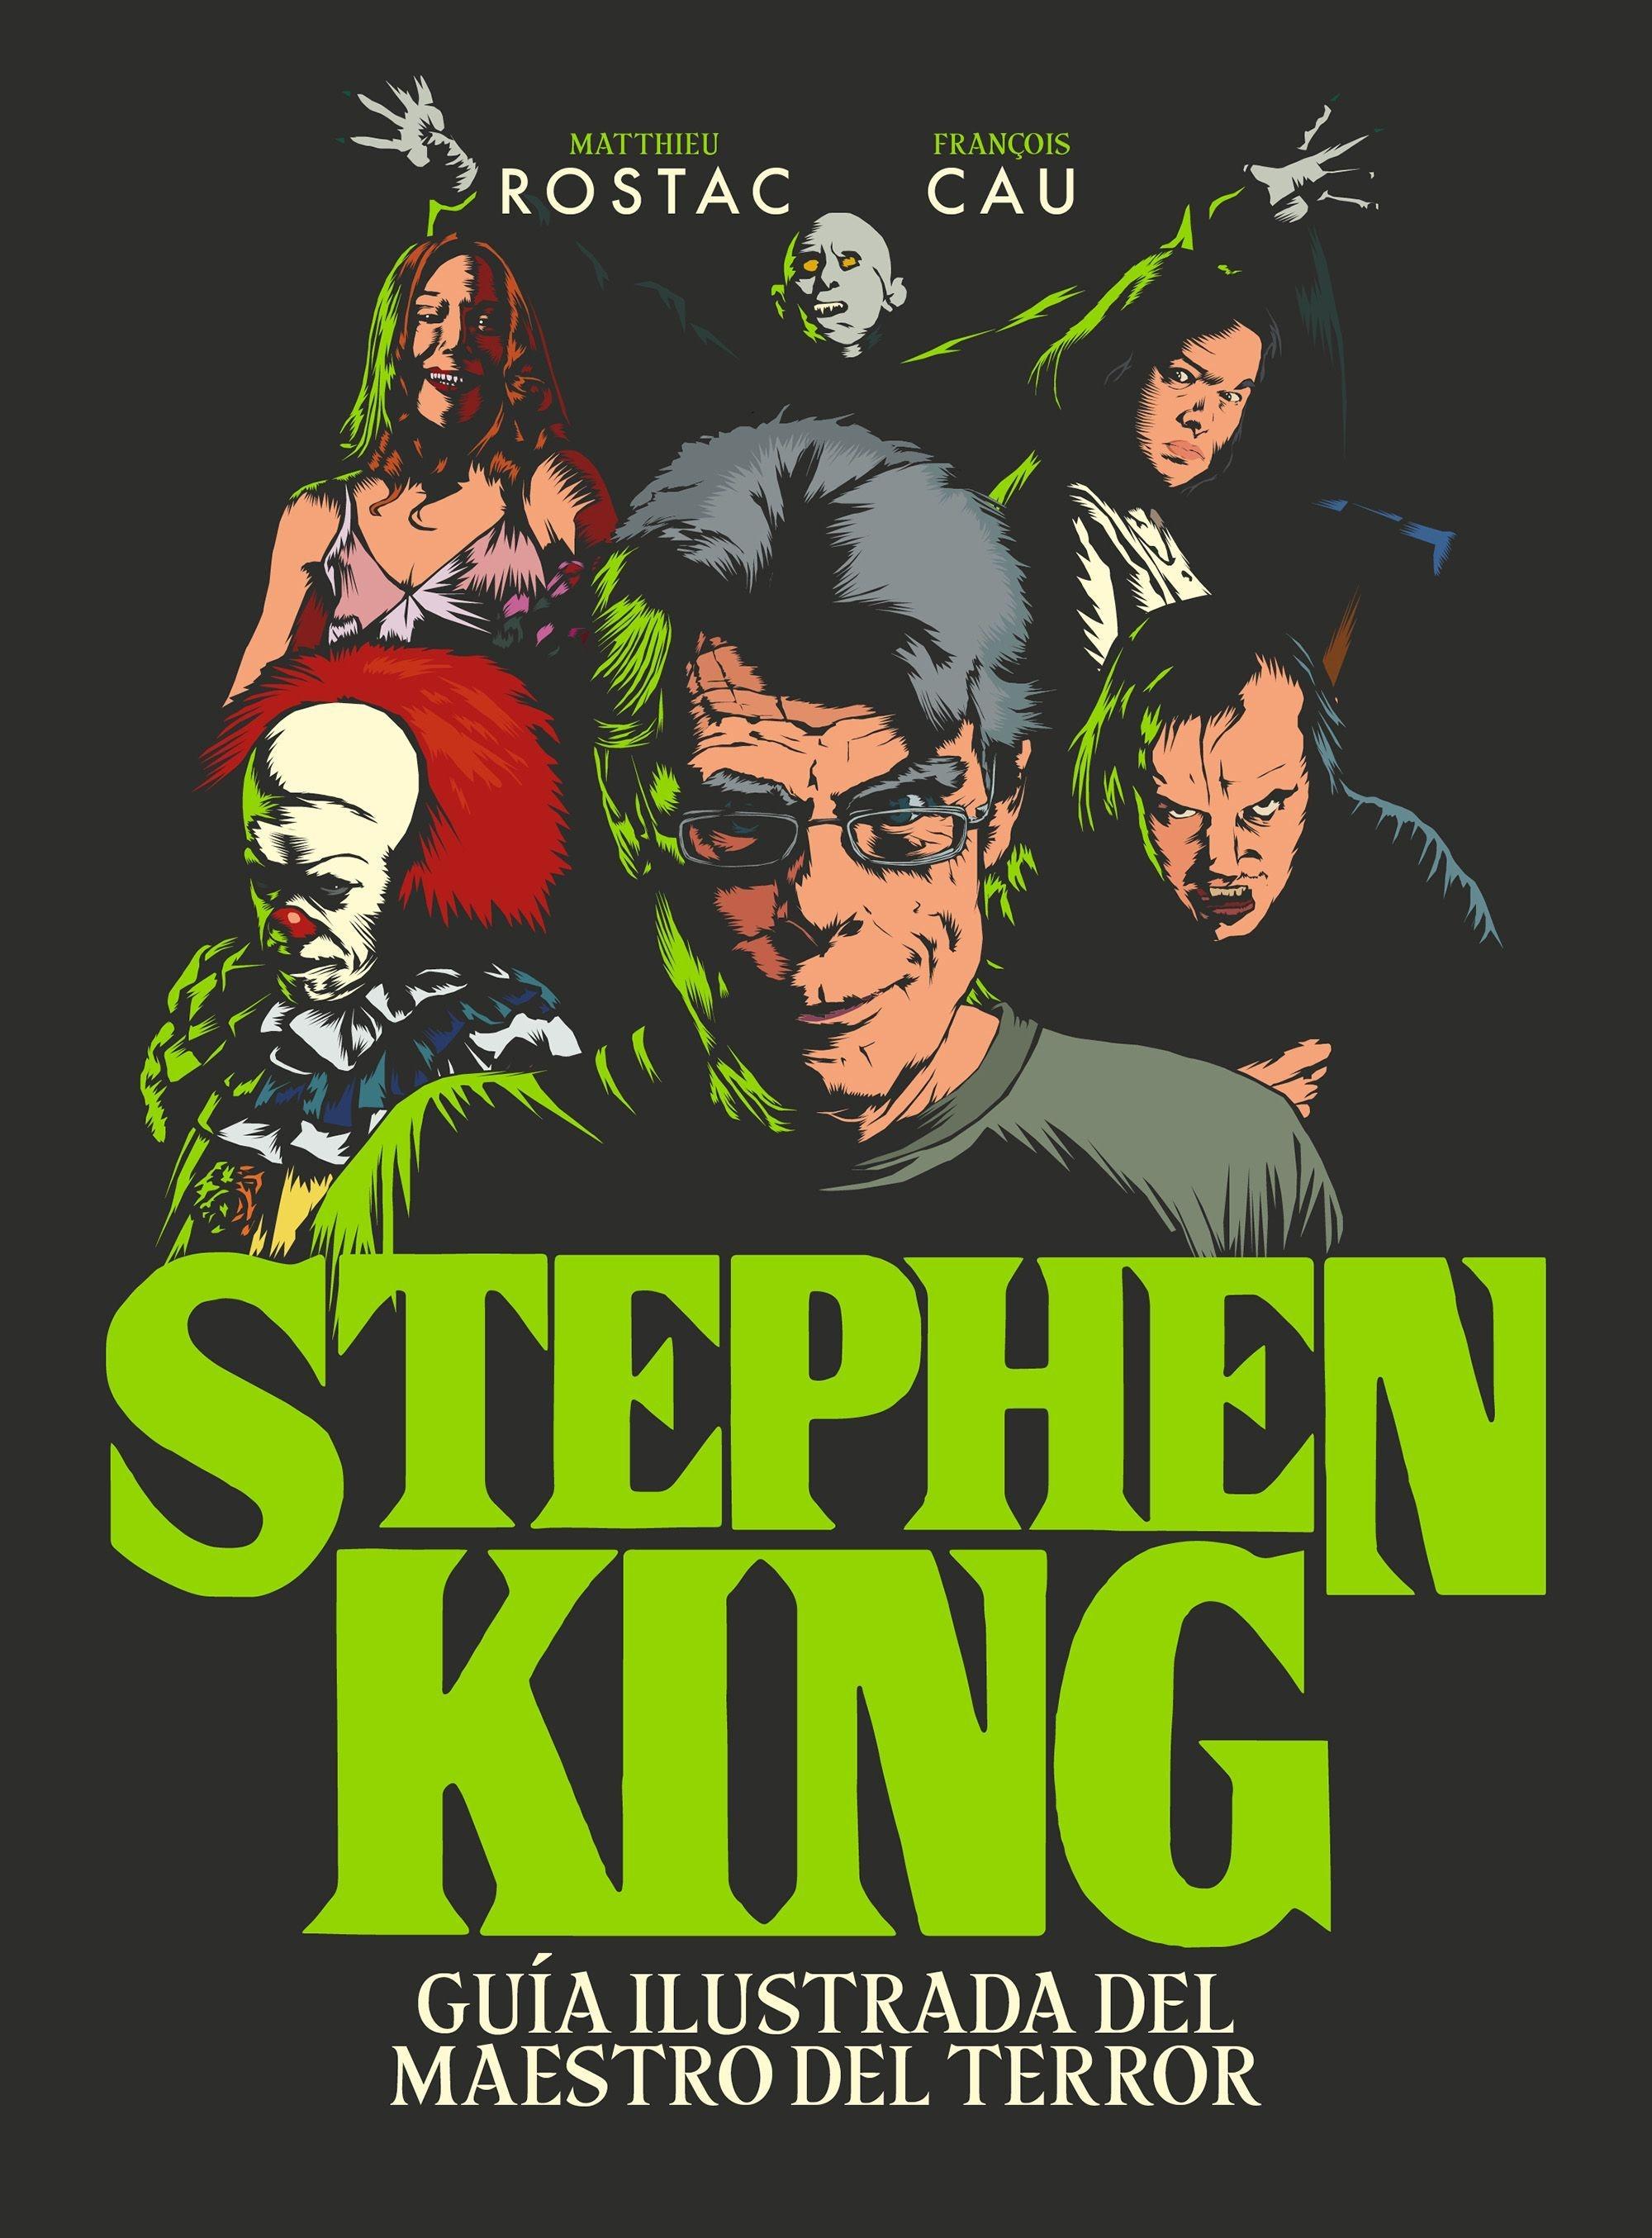 Stephen King "Guía Ilustrada del Maestro del Terror"